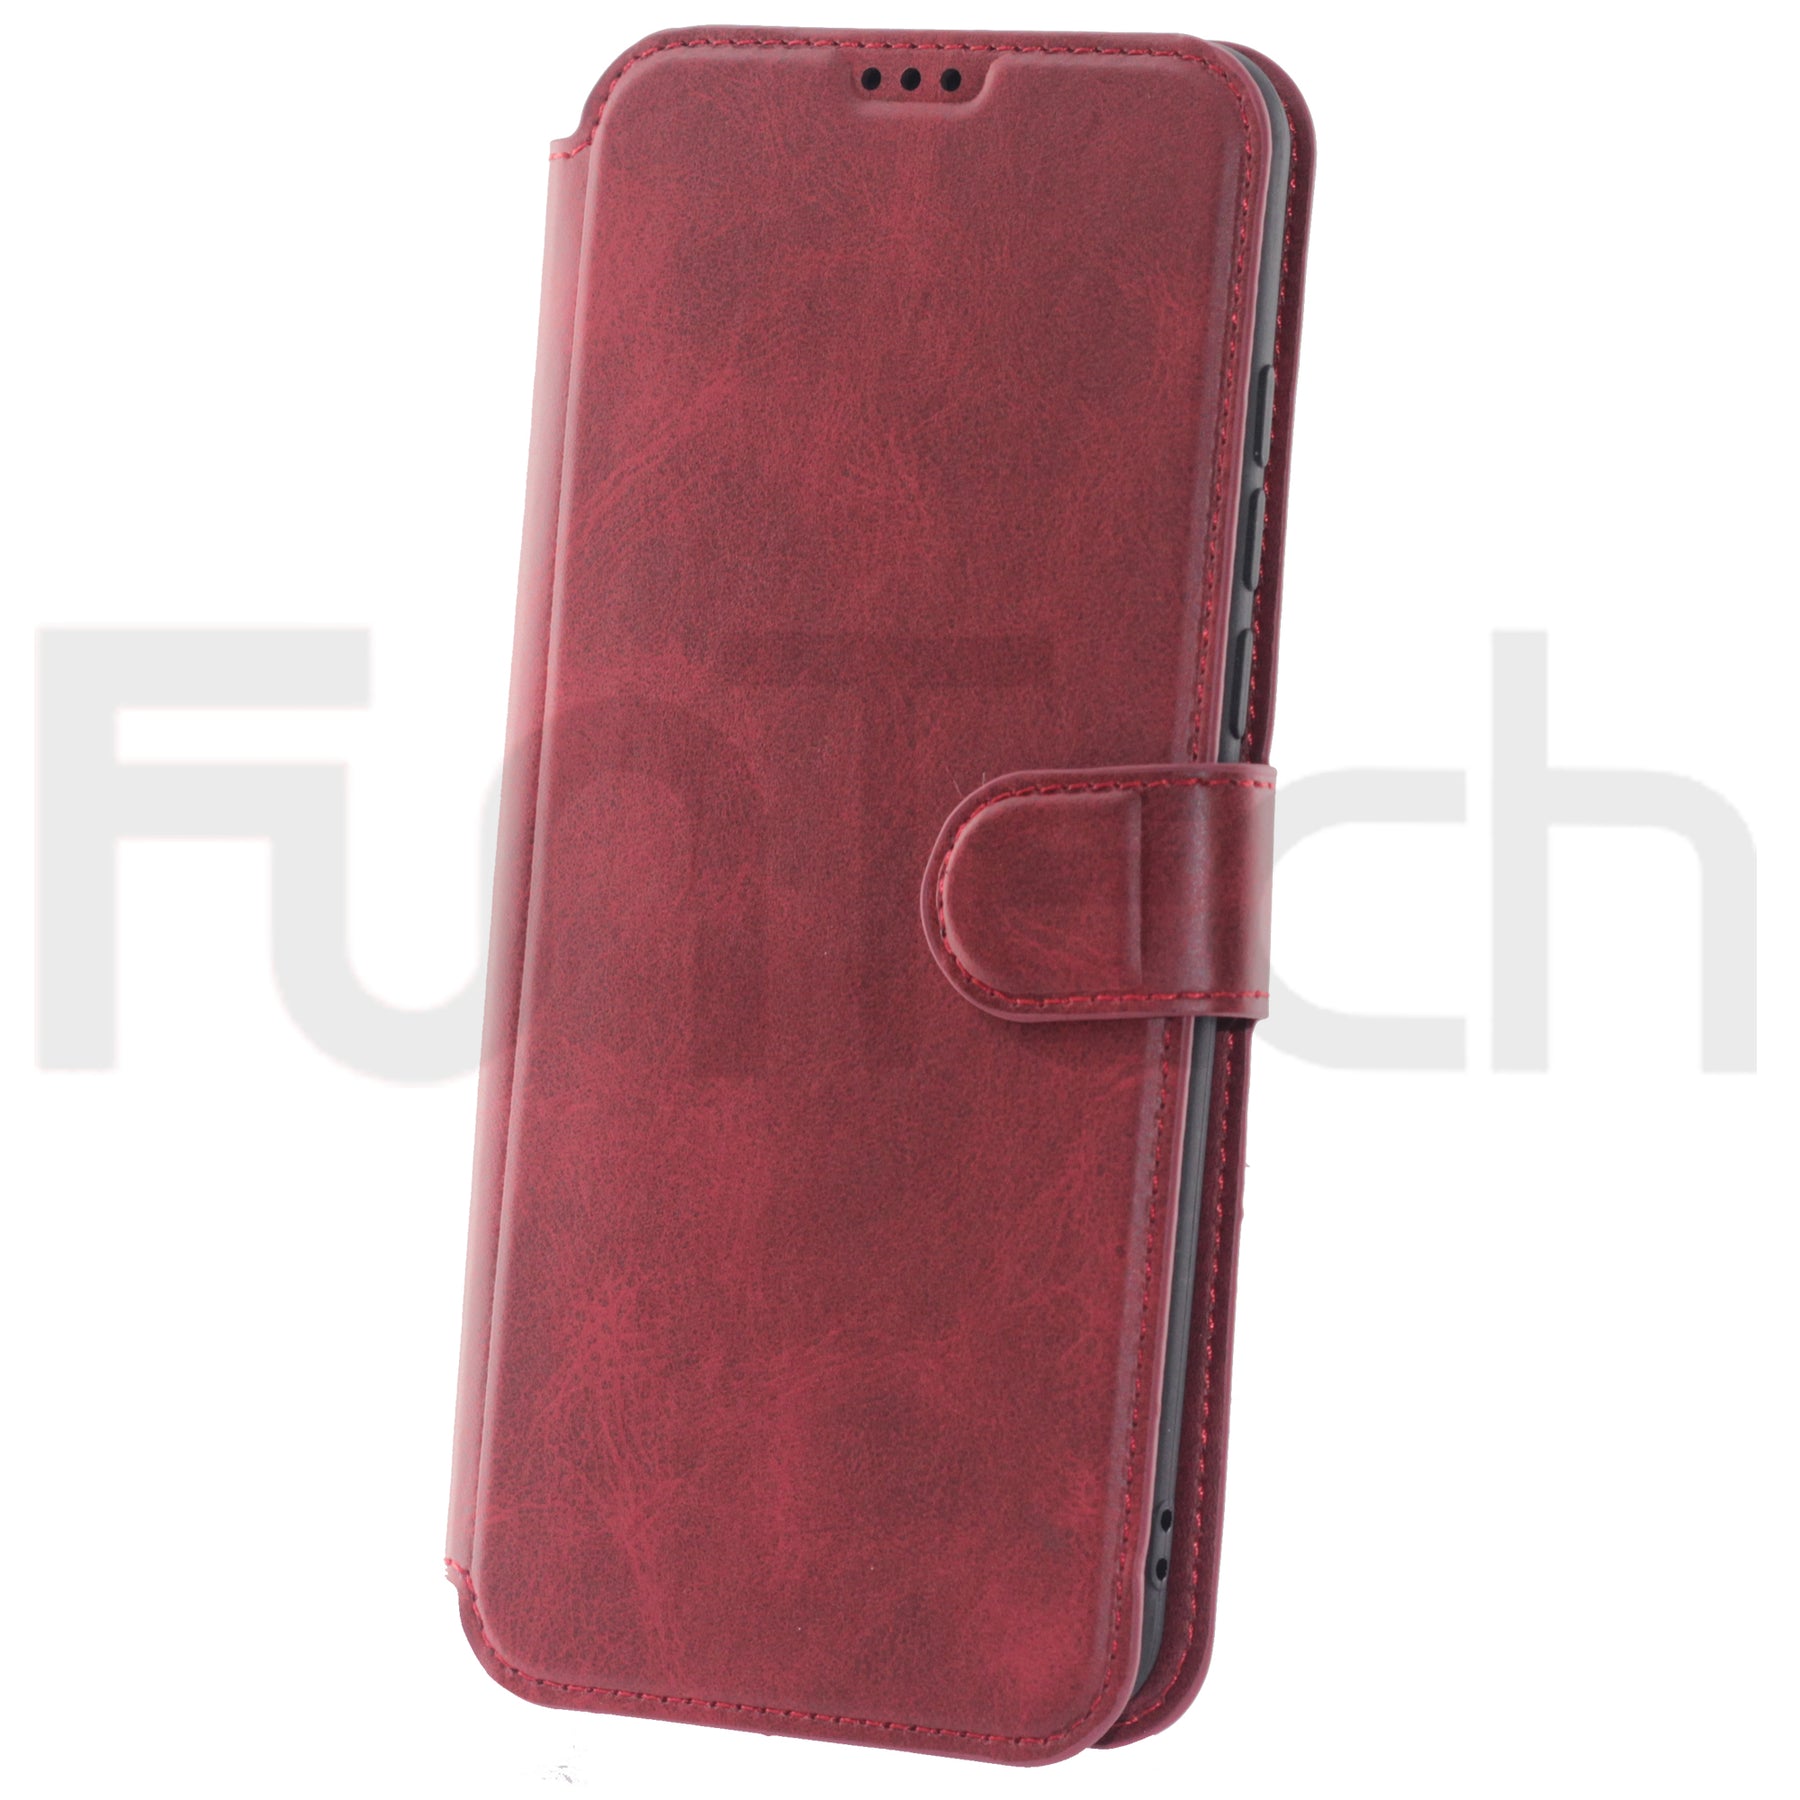 20SE, Leather Wallet Case, Color Red.